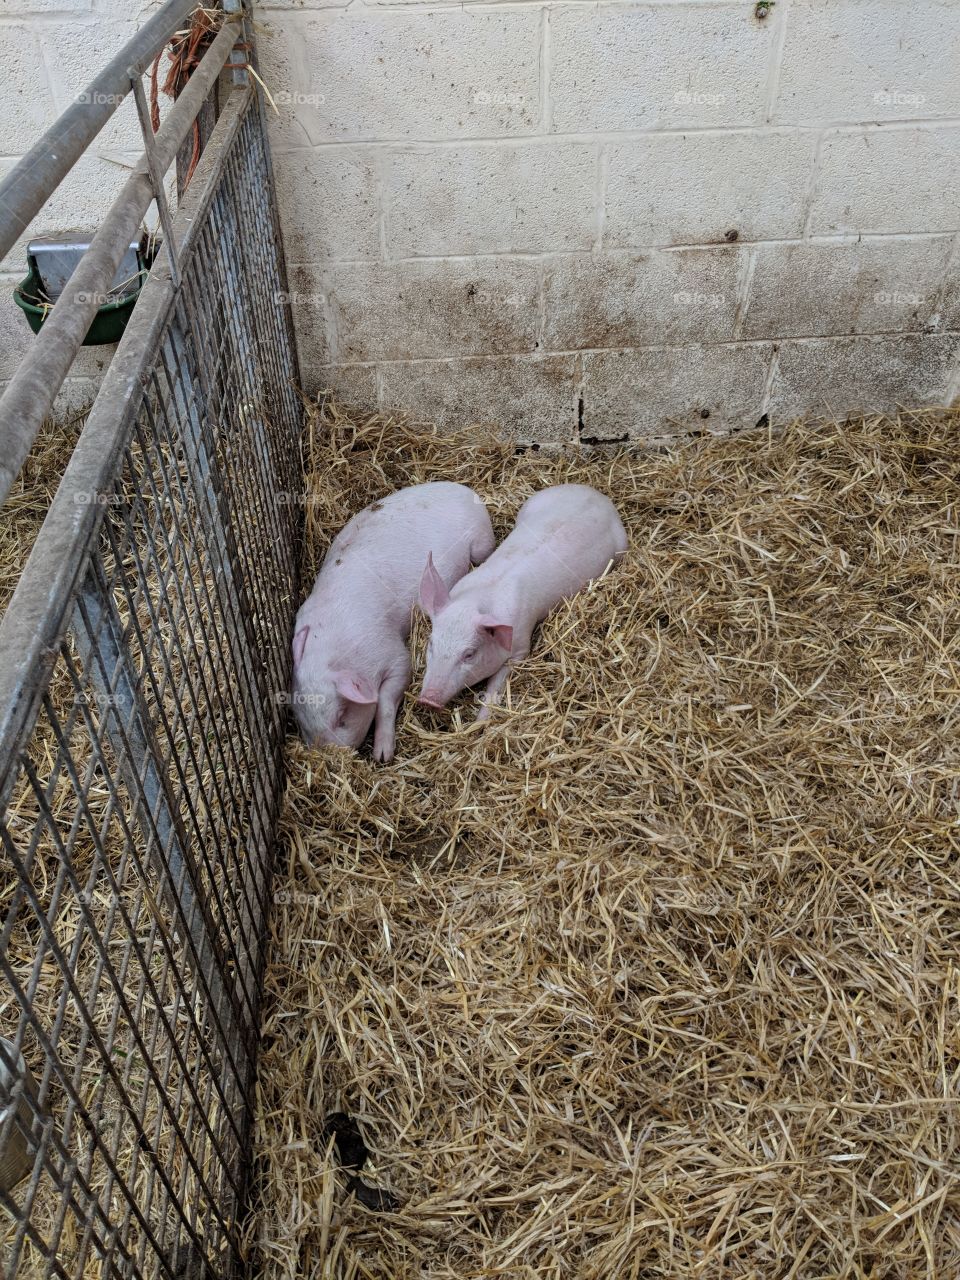 Two pink piglets in a stye